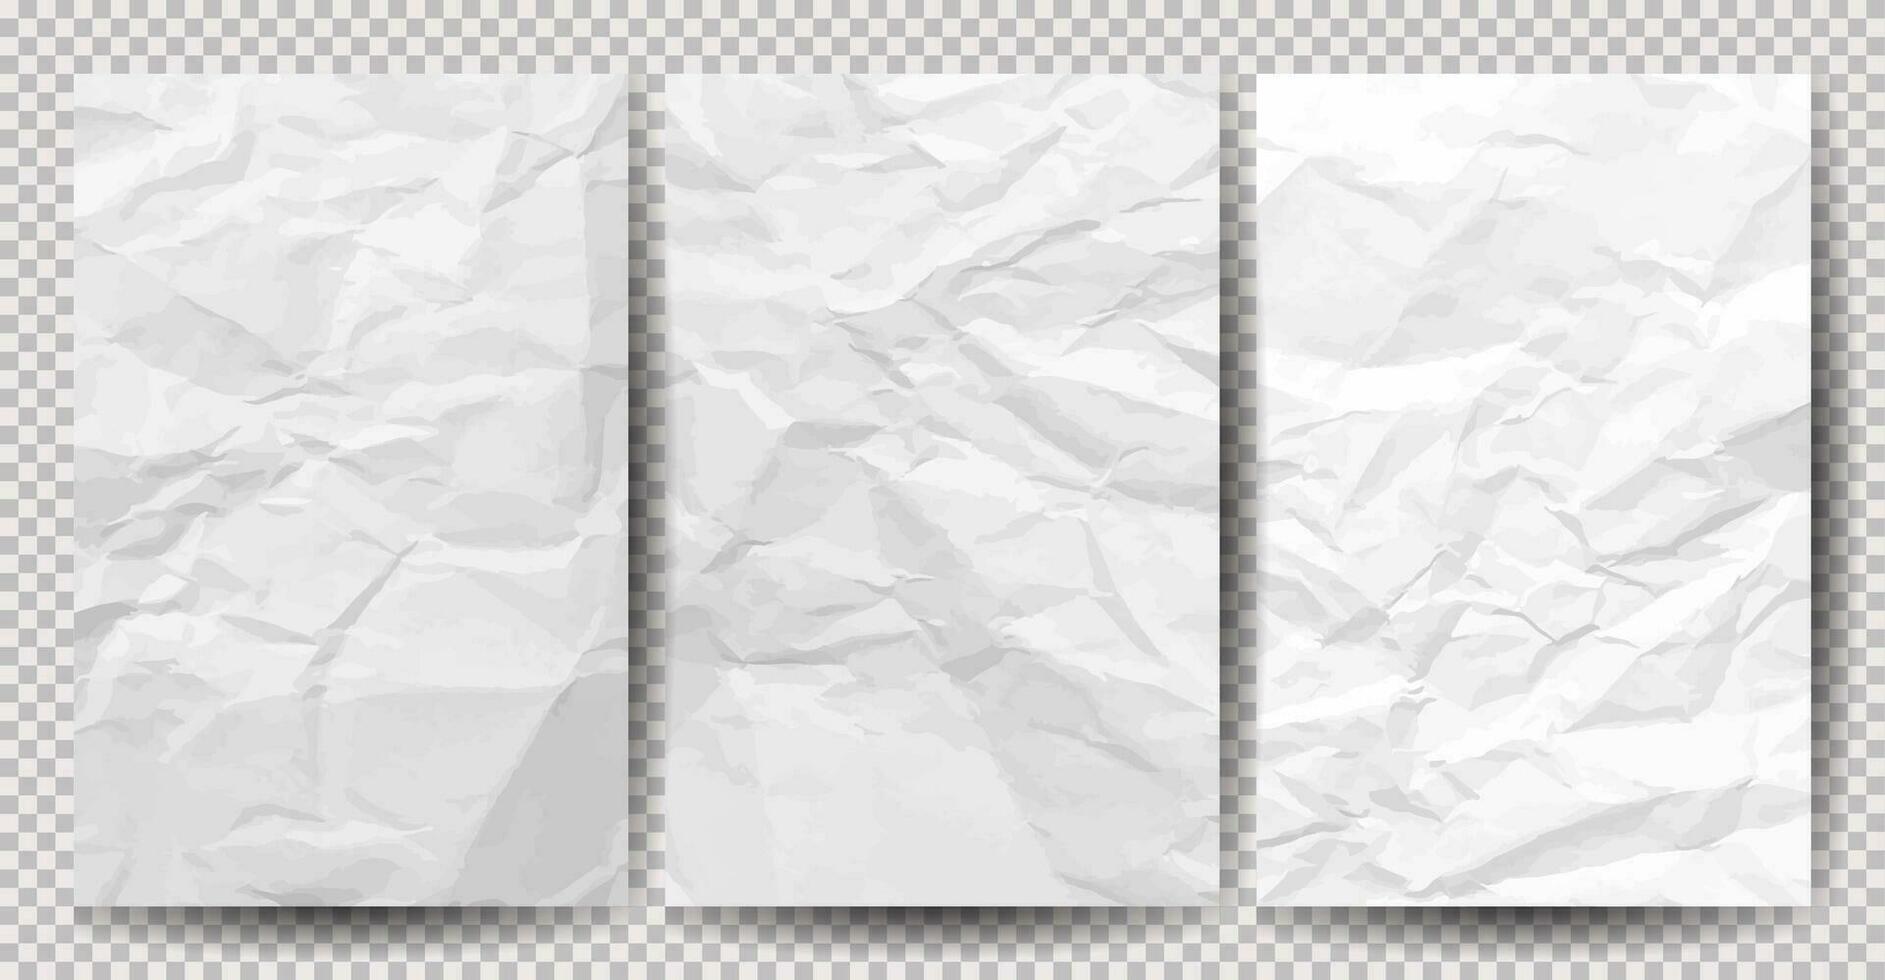 uppsättning av vit rena skrynkliga papper på transparent bakgrund. skrynkliga tömma ark av papper med skugga för posters och banderoller. vektor illustration